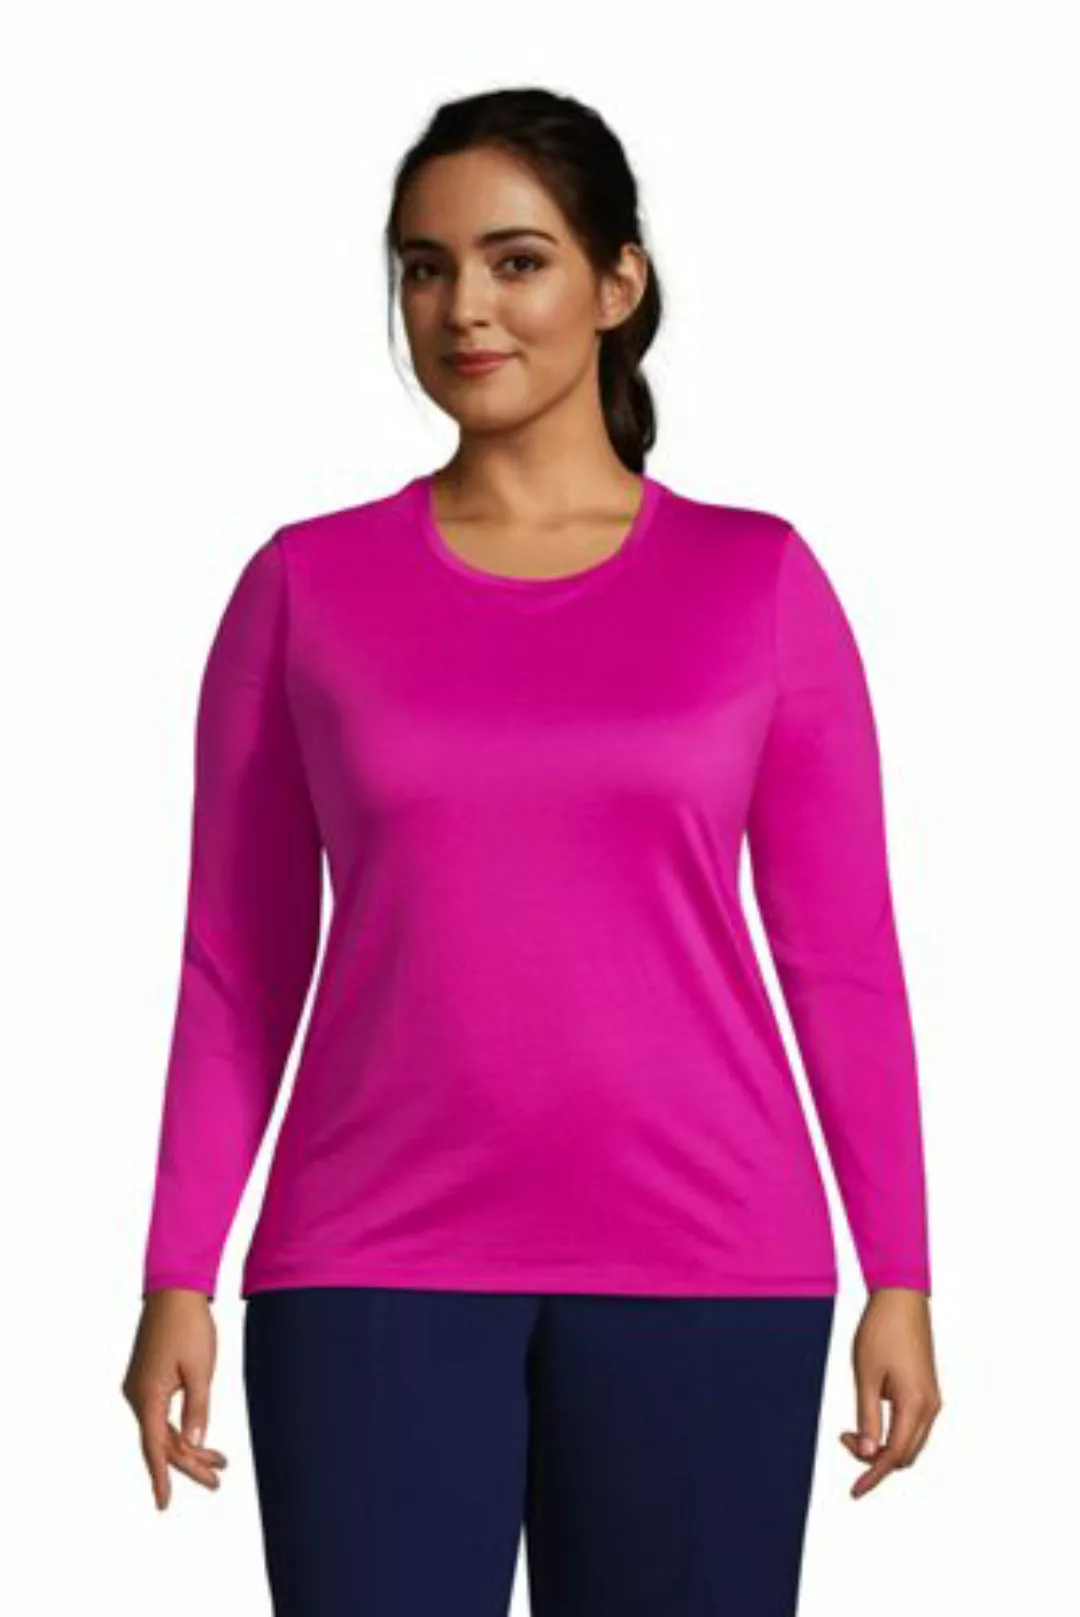 Supima-Shirt, Langarm in großen Größen, Damen, Größe: 52-54 Plusgrößen, Rot günstig online kaufen